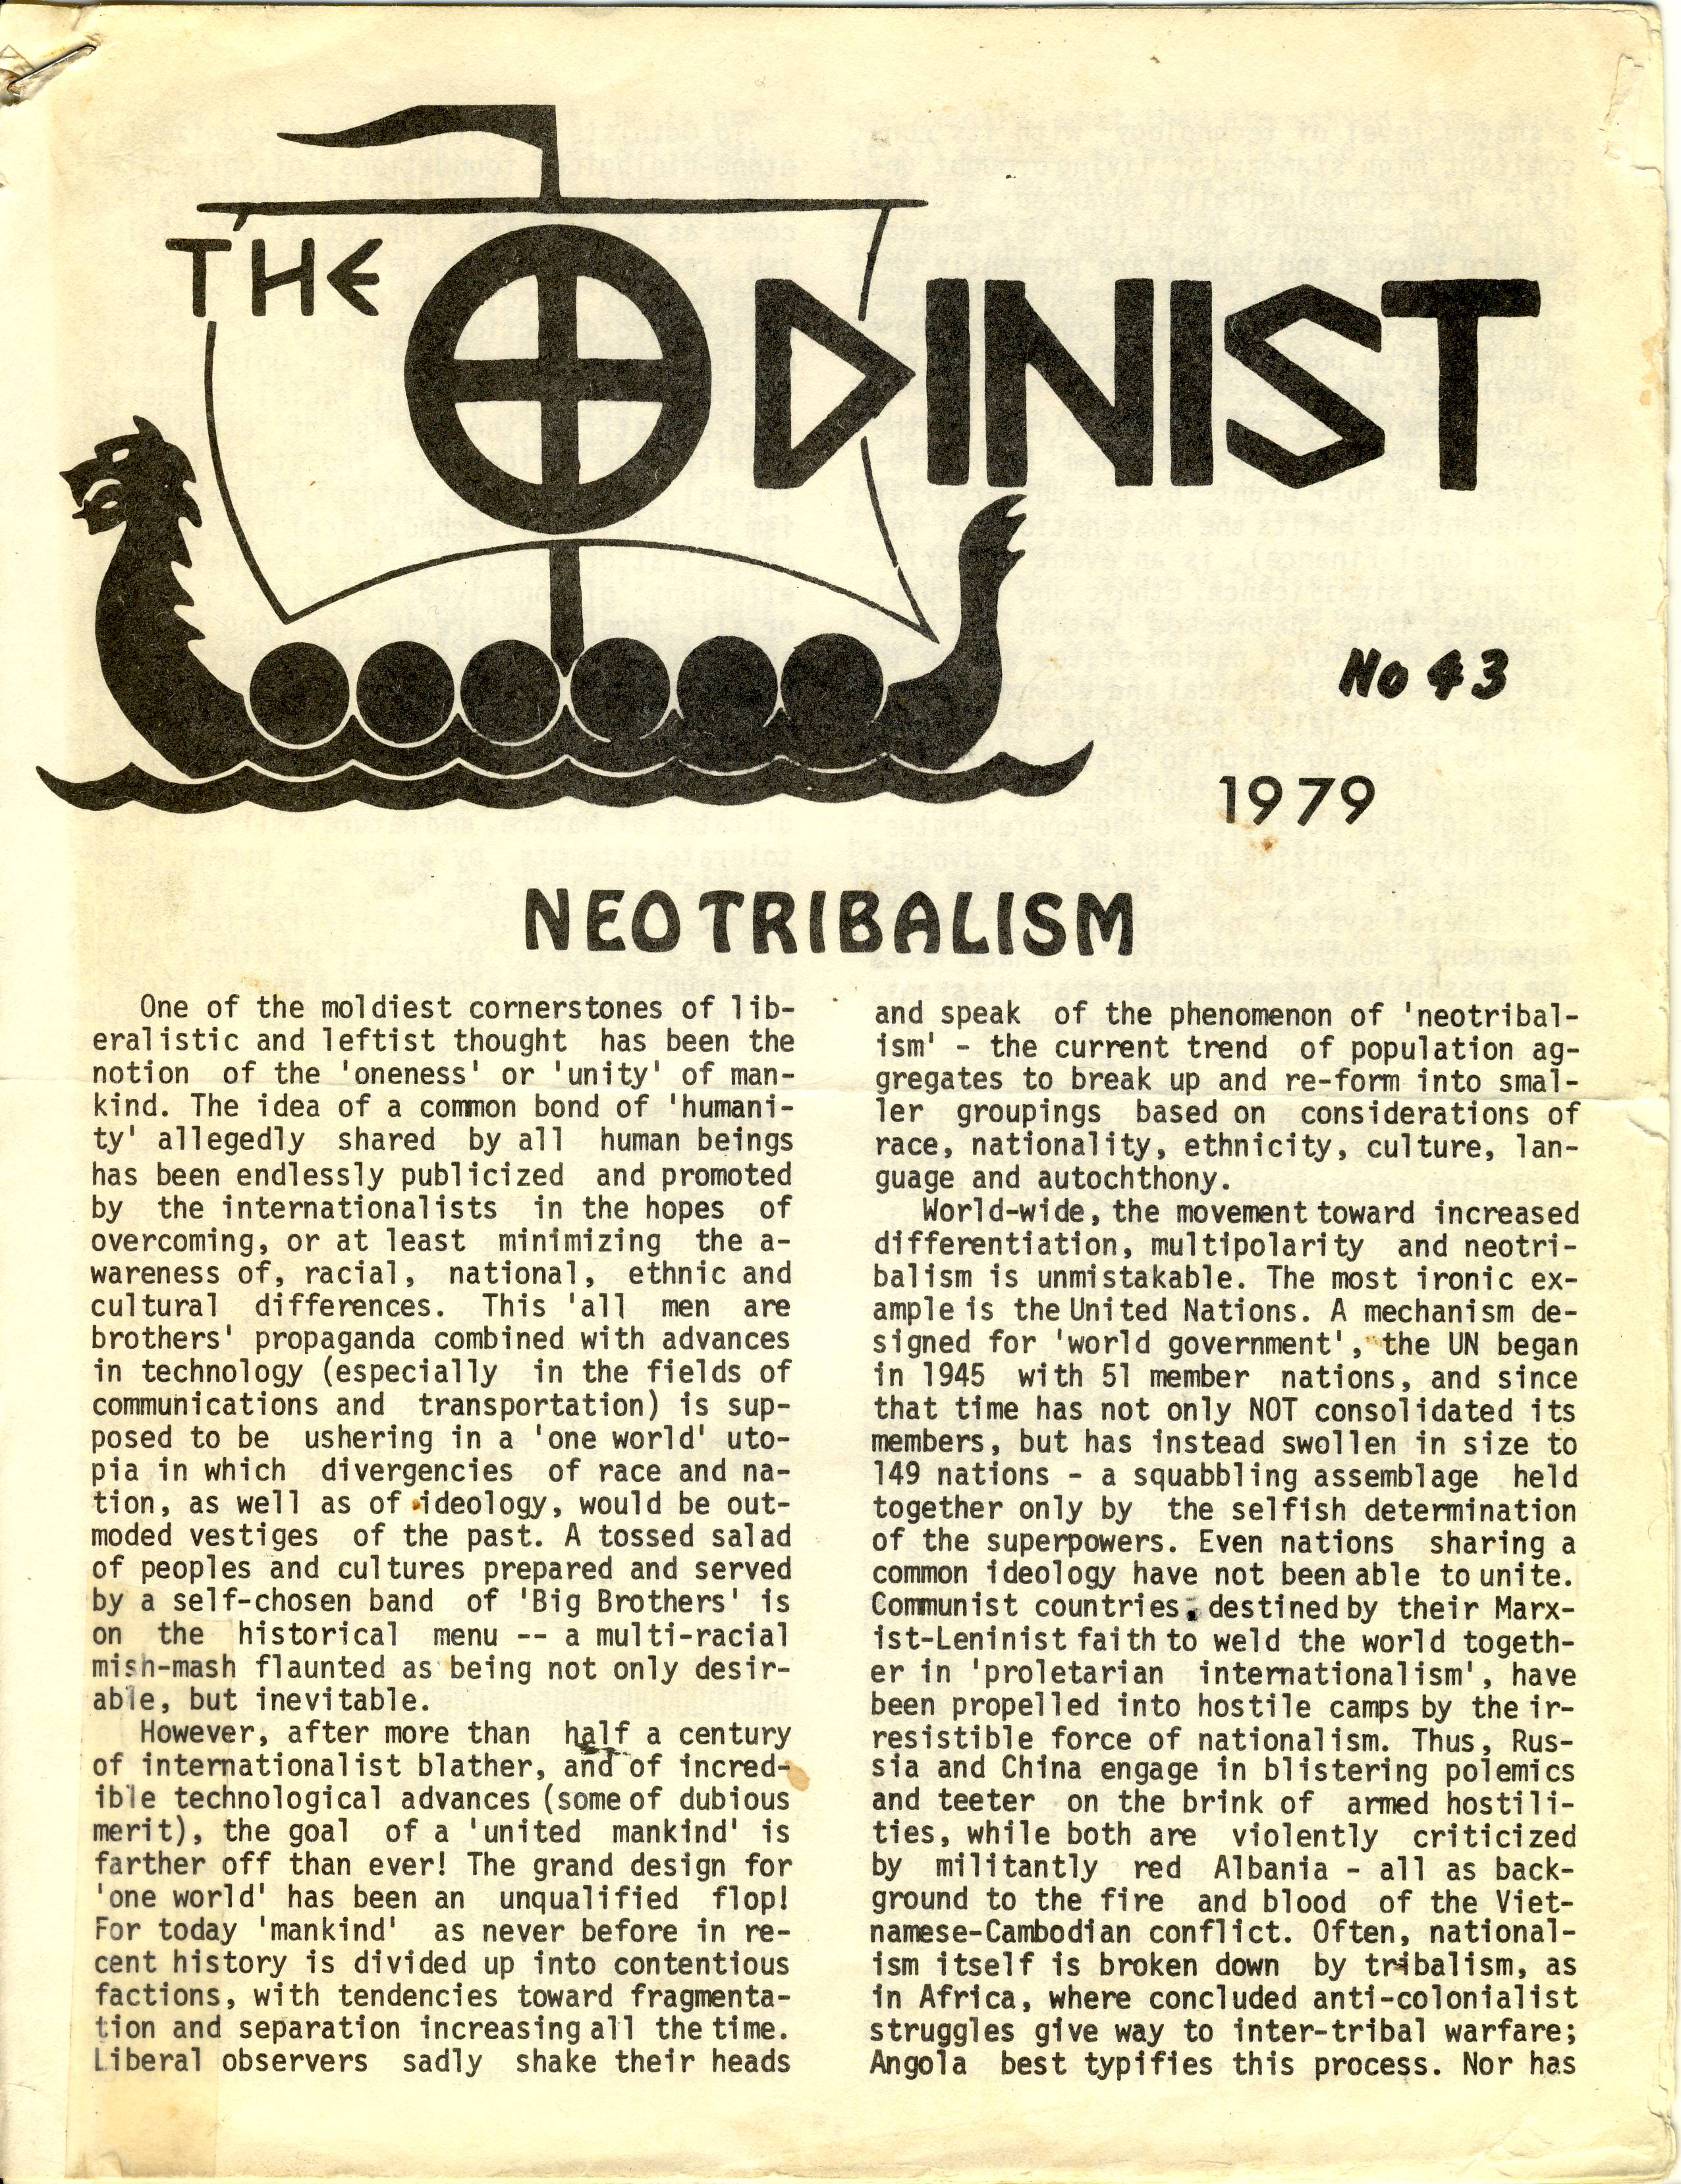 Else Christensen hablando sobre Neo-Tribalismo